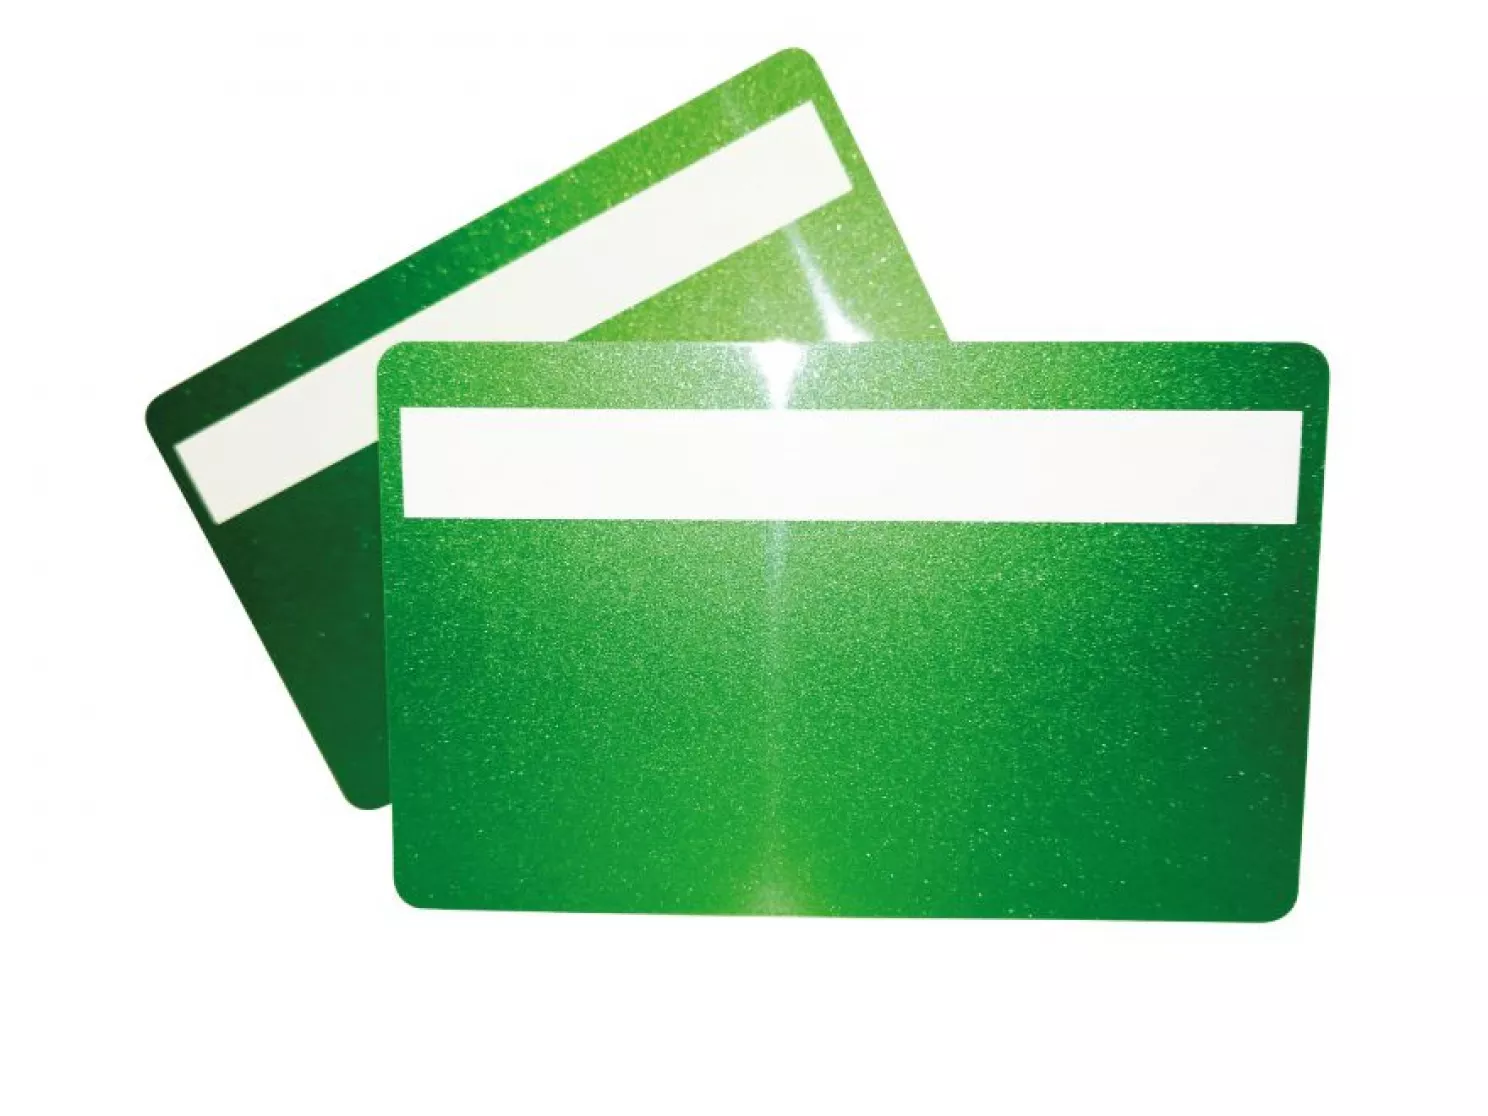 Plastikkarte grün metallic mit Unterschriftfeld